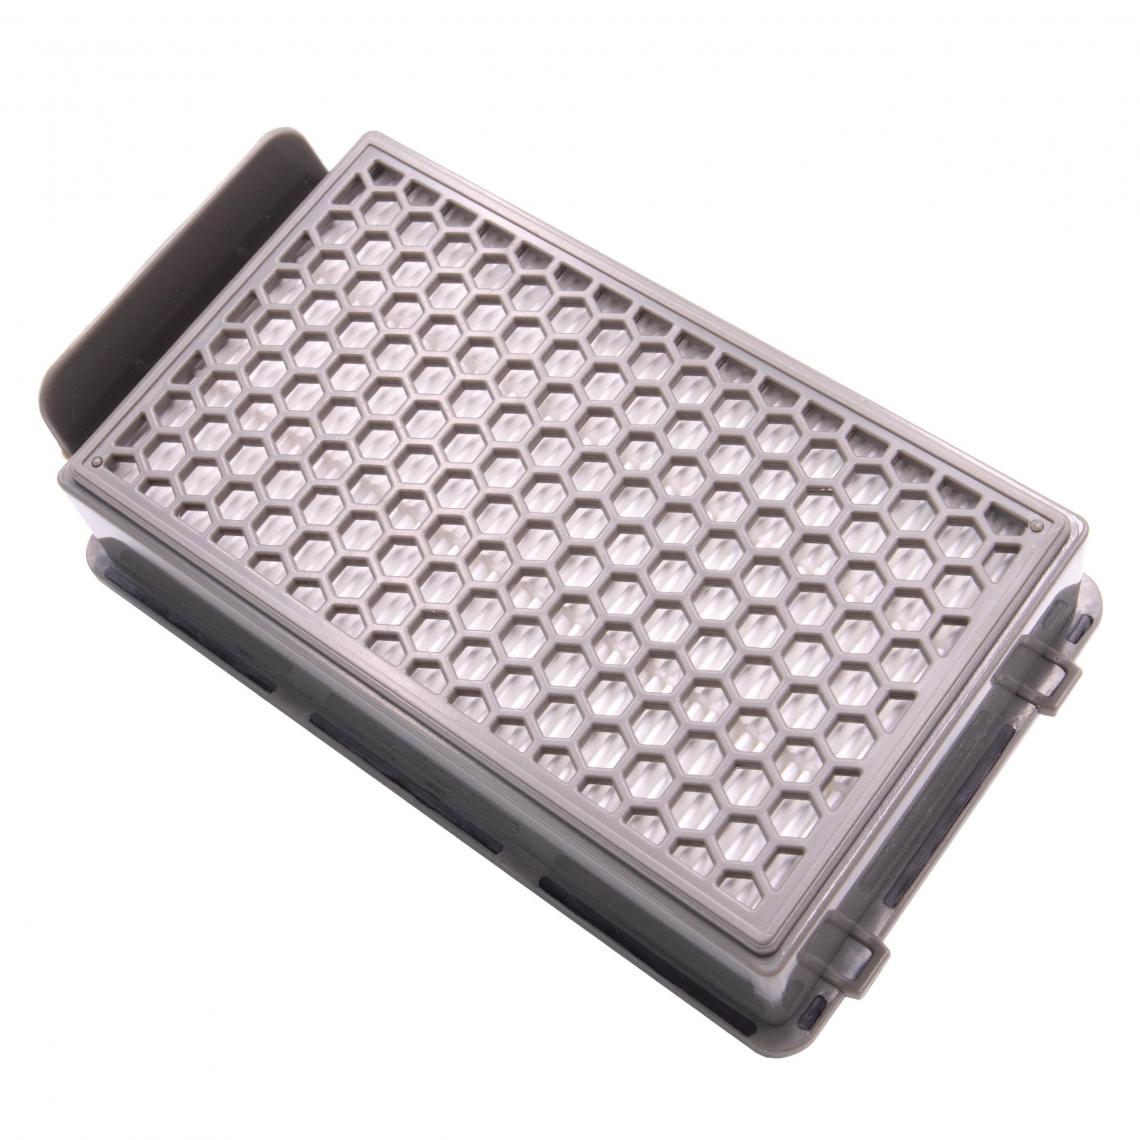 Vhbw - vhbw Filtre d'aspirateur compatible avec Moulinex MO3774PA / 4Q0, MO378, MO3786, MO3786PA aspirateur - Filtre HEPA contre les allergies - Accessoire entretien des sols